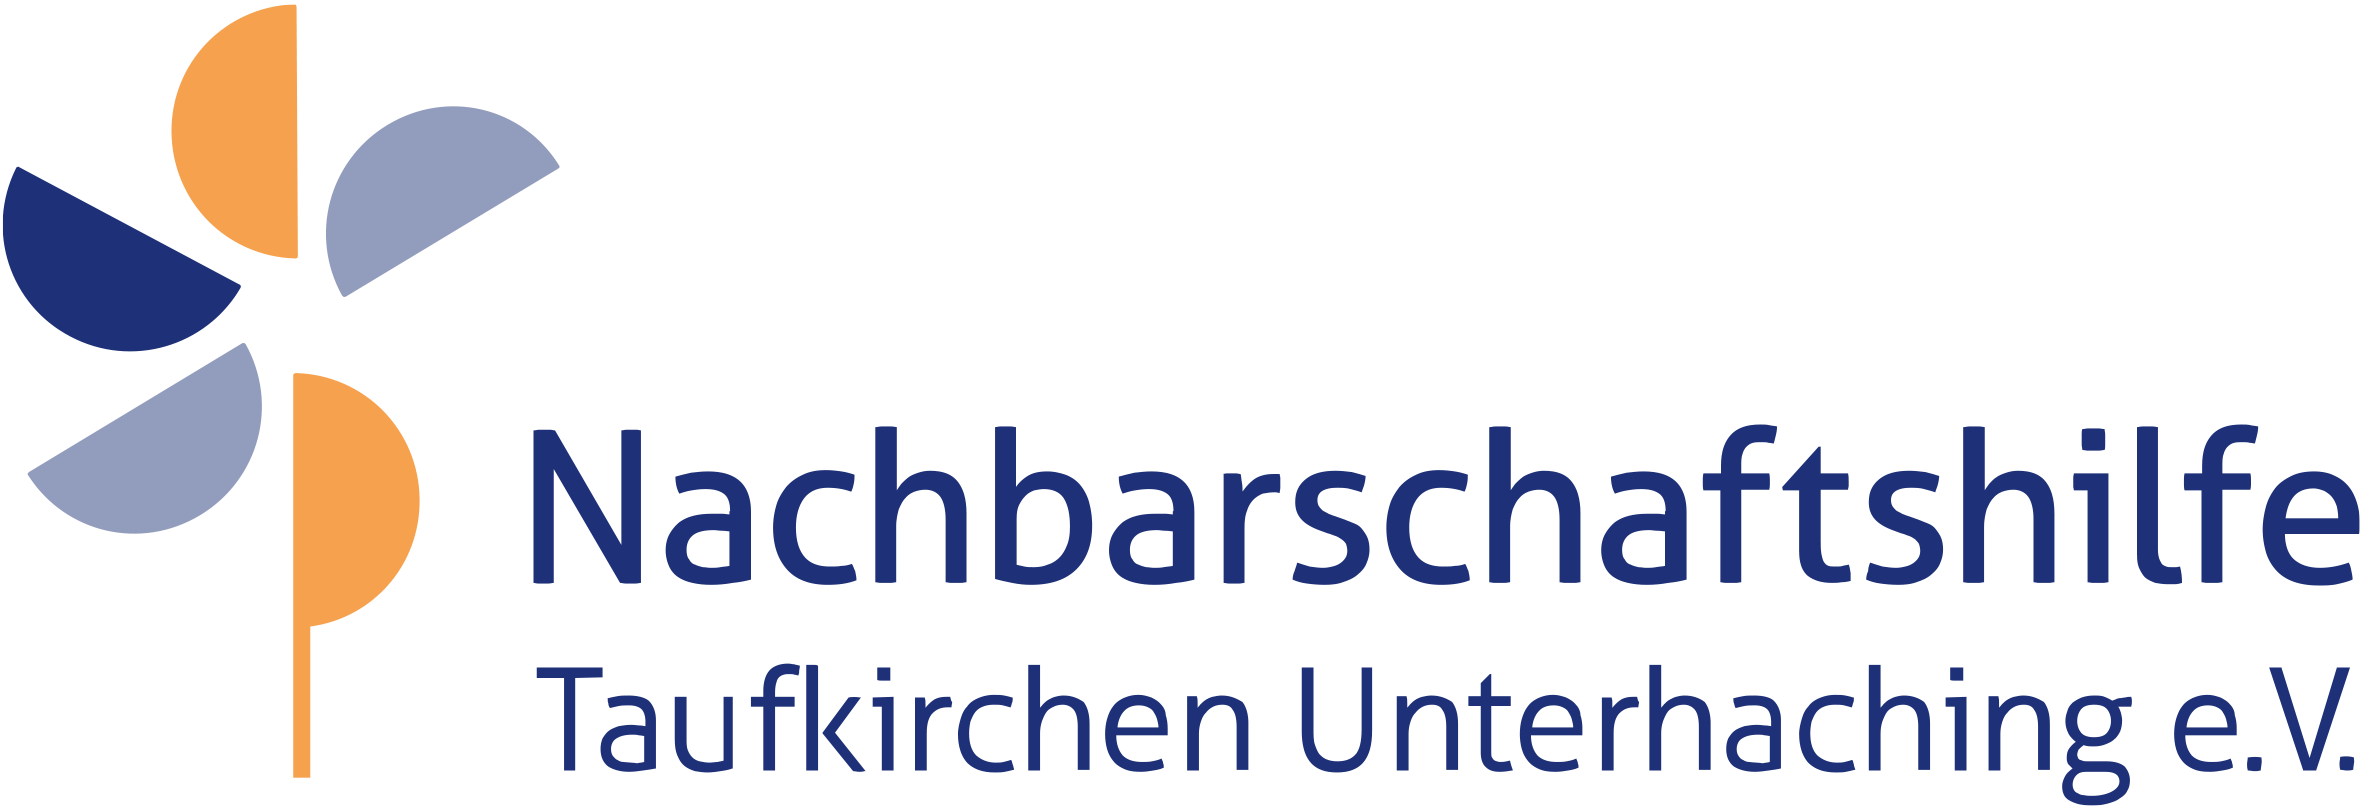 Nachbarschaftshilfe Taufkirchen Unterhaching - Gesprächskreis für pflegende Angehörige